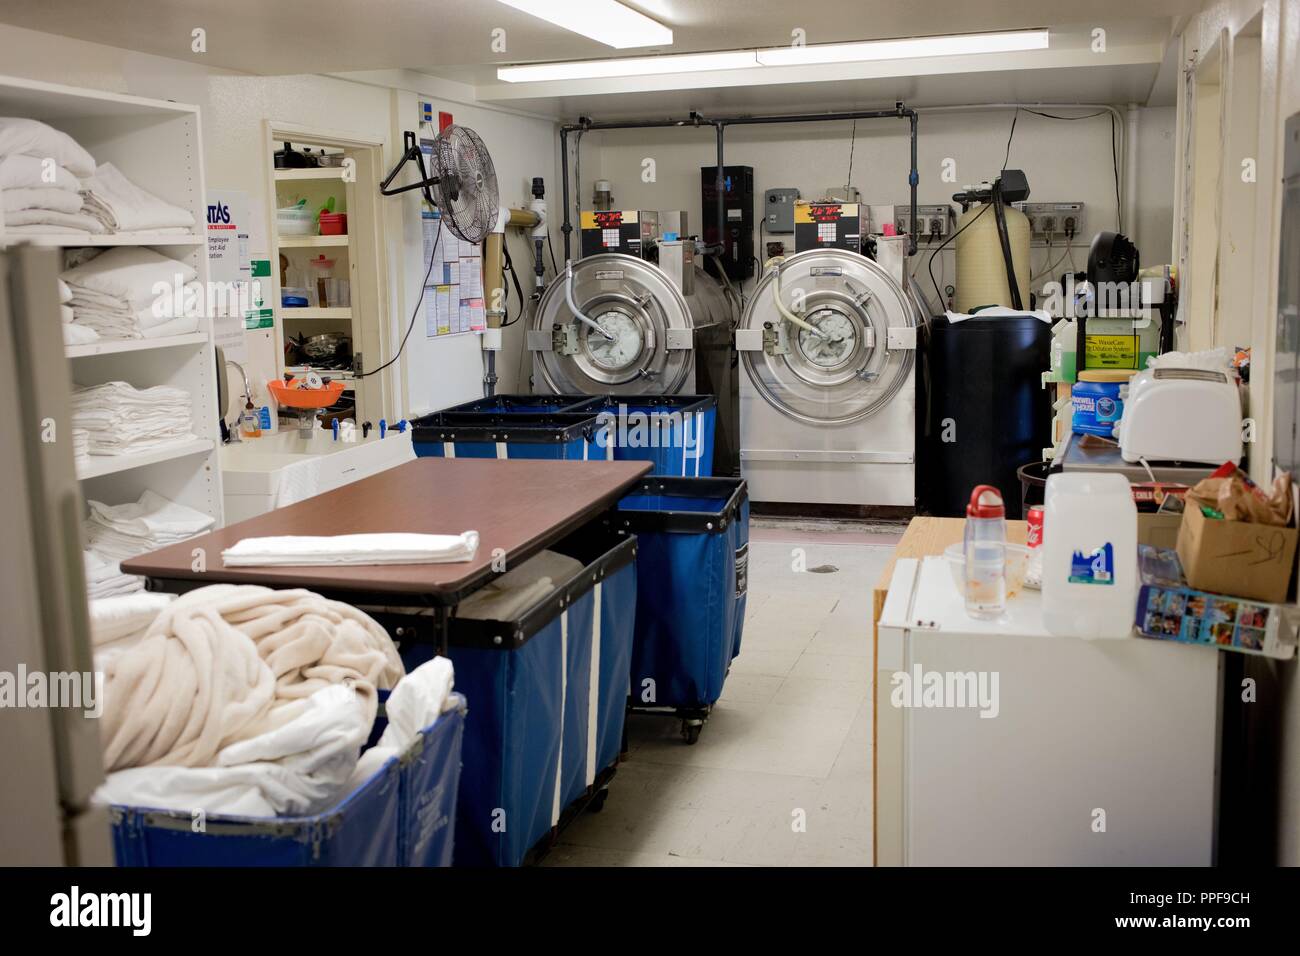 Hotel laundry immagini e fotografie stock ad alta risoluzione - Alamy